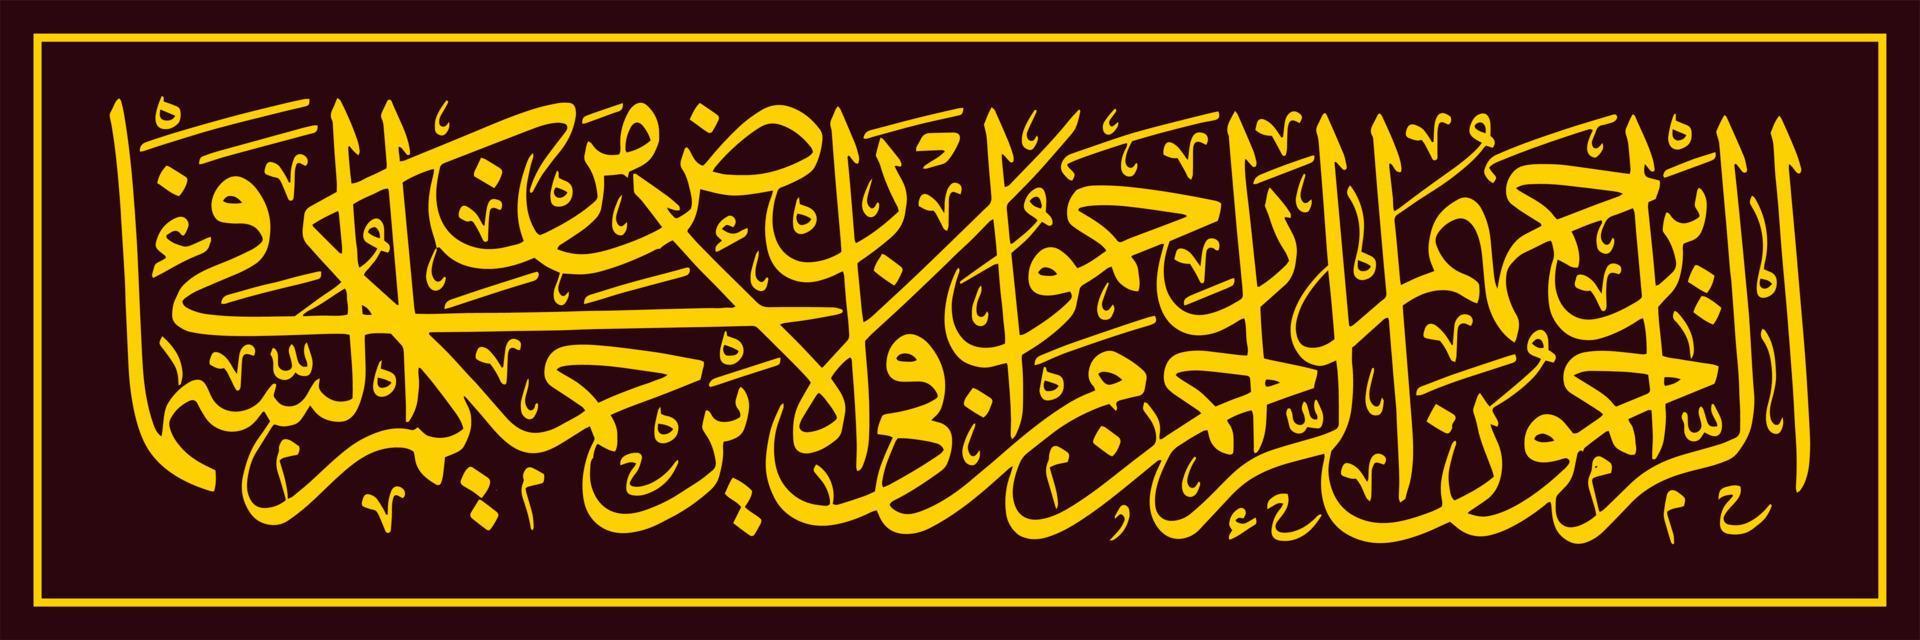 calligraphie arabe, traduction ceux qui sont miséricordieux, seront aimés par allah, le rahman. par conséquent, aimez toutes les créatures sur terre, sûrement toutes les créatures dans le ciel vous aimeront tous vecteur